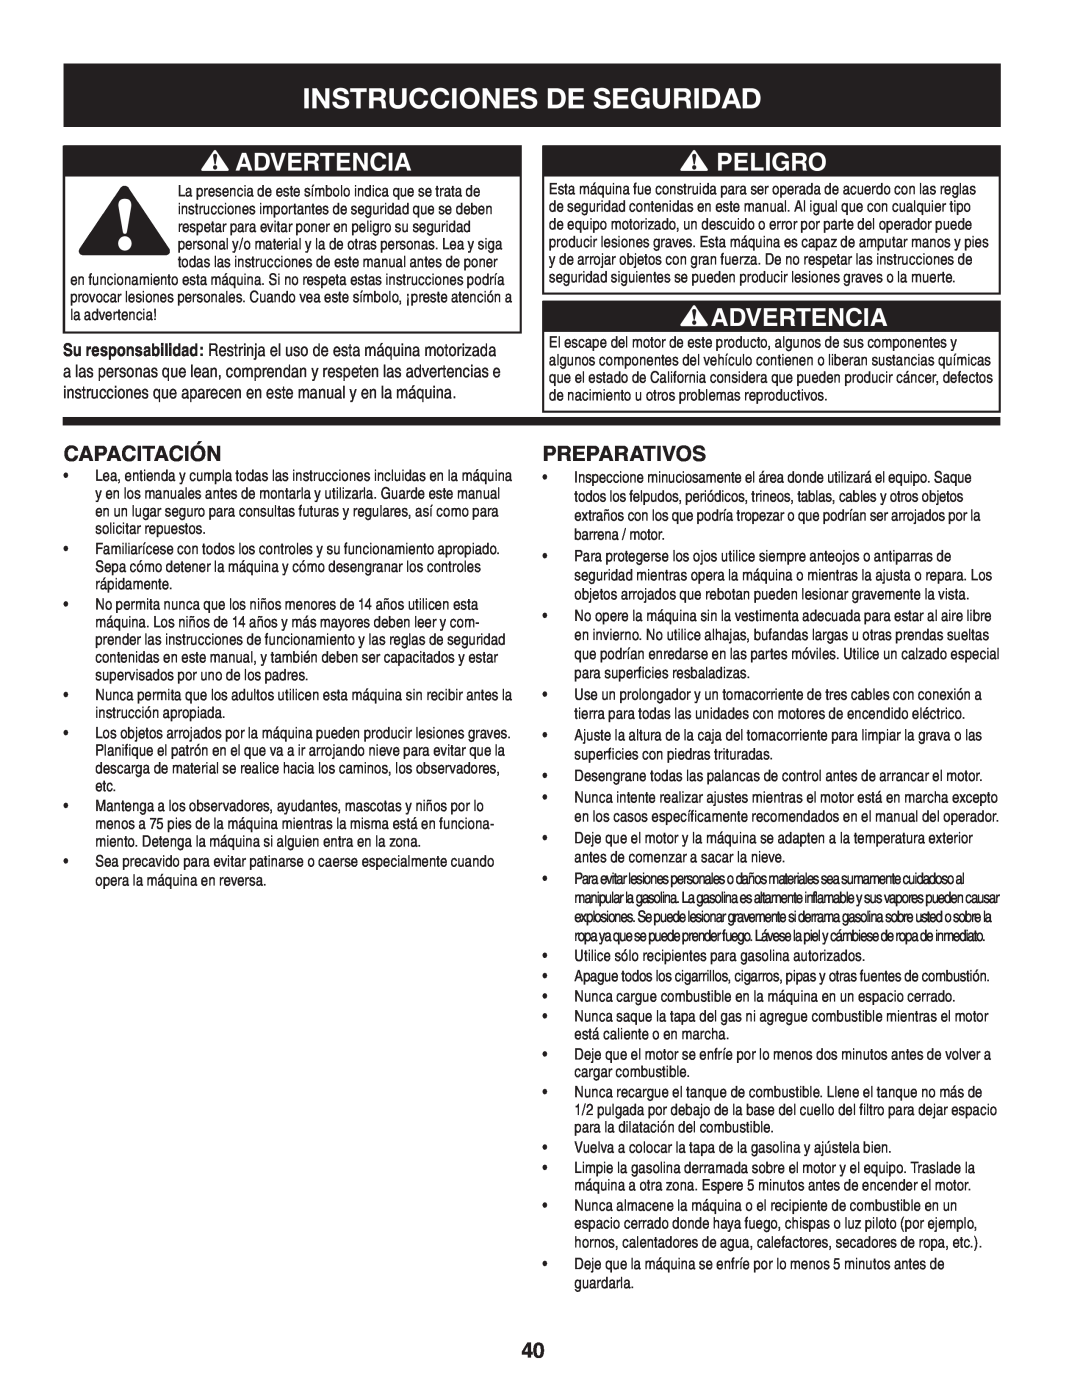 Sears 247.8879 operating instructions Instrucciones De Seguridad, Advertencia, Peligro, Capacitación, Preparativos 